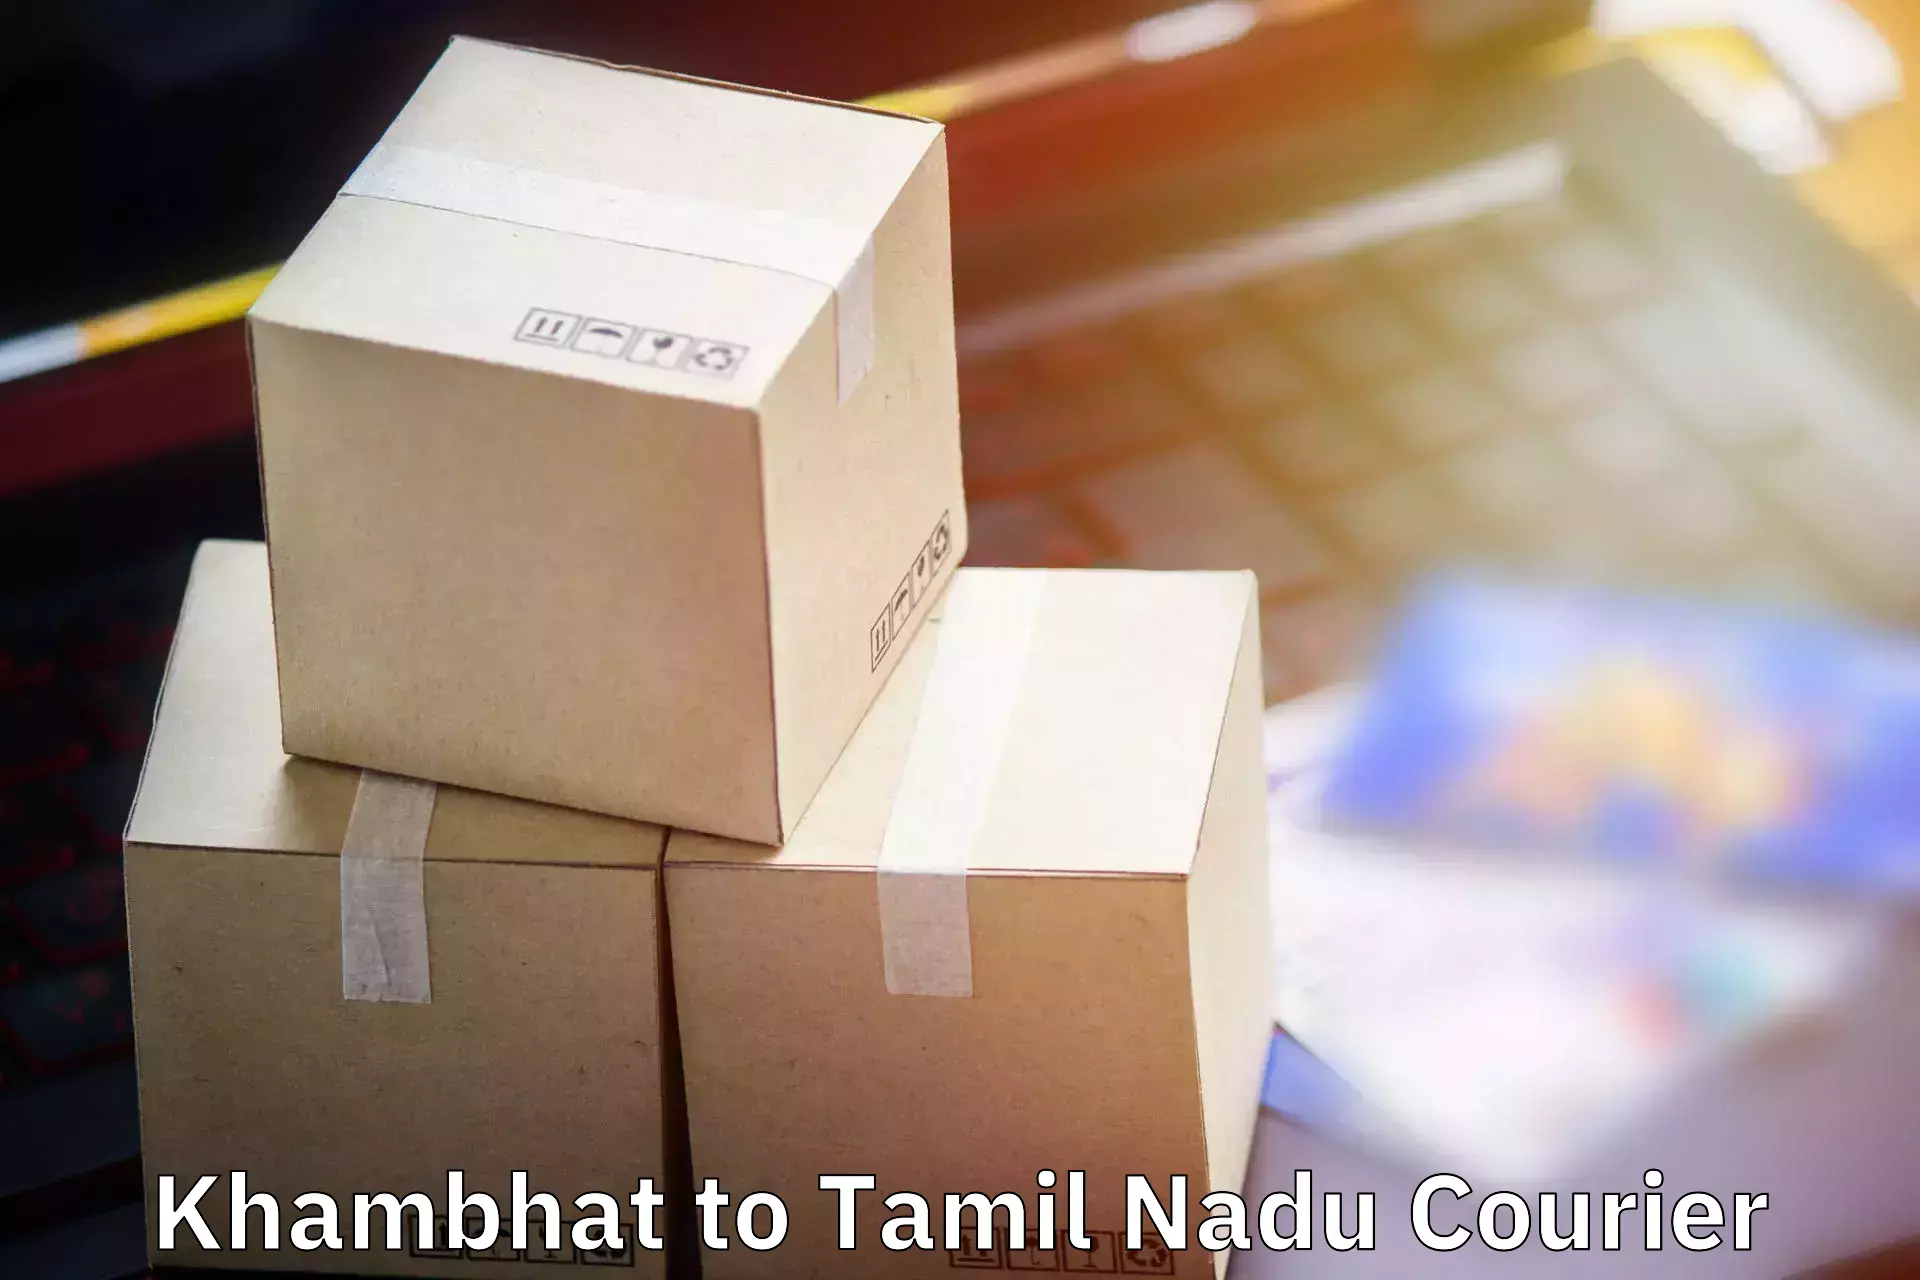 Nationwide luggage courier Khambhat to Tirunelveli